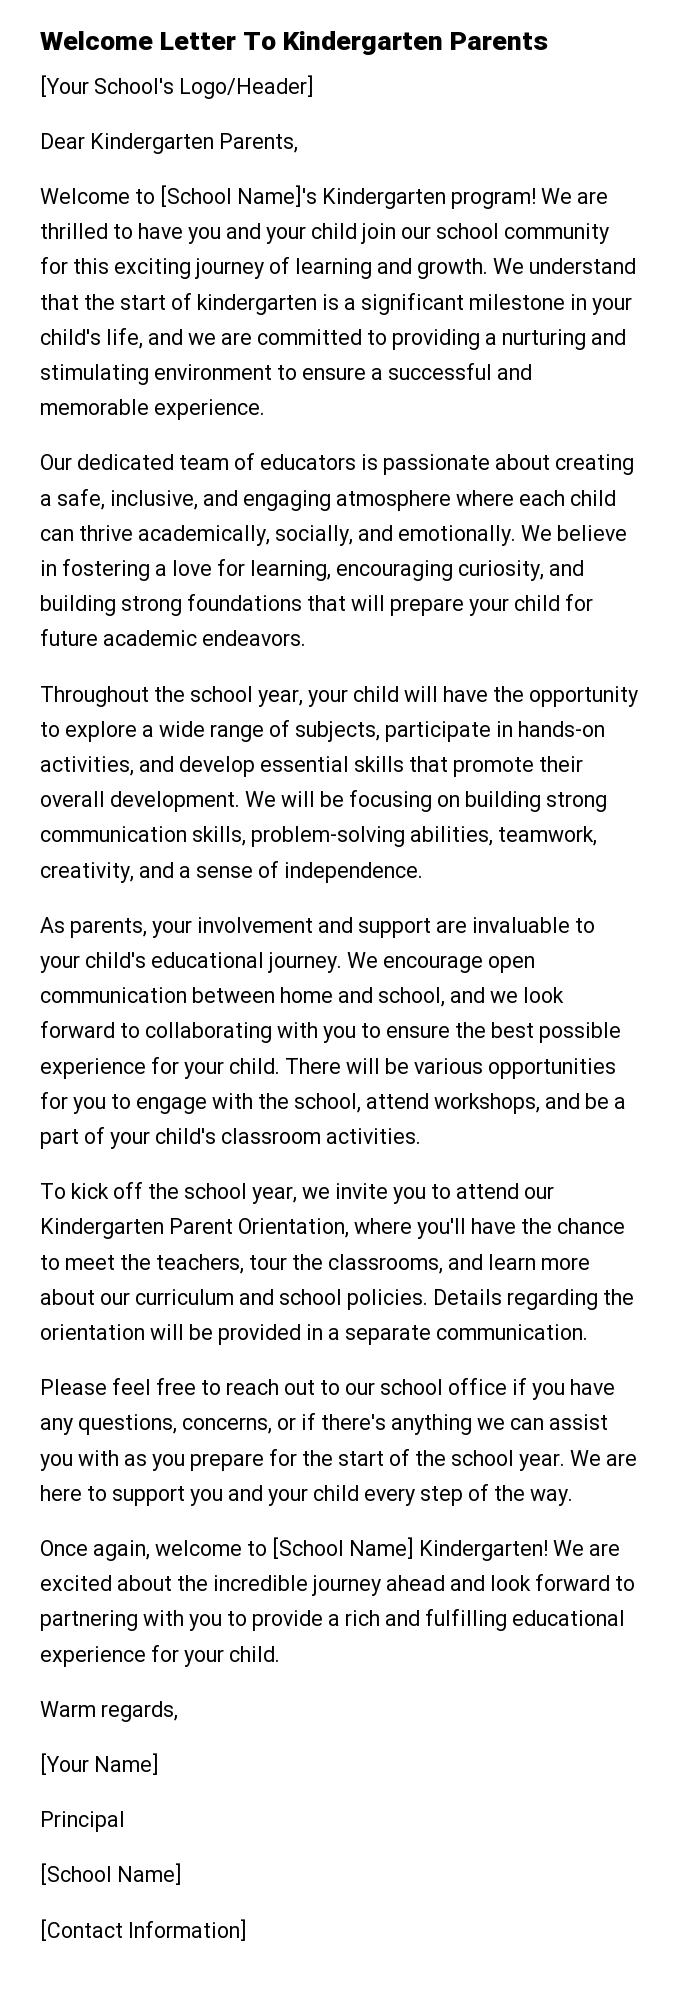 Welcome Letter To Kindergarten Parents